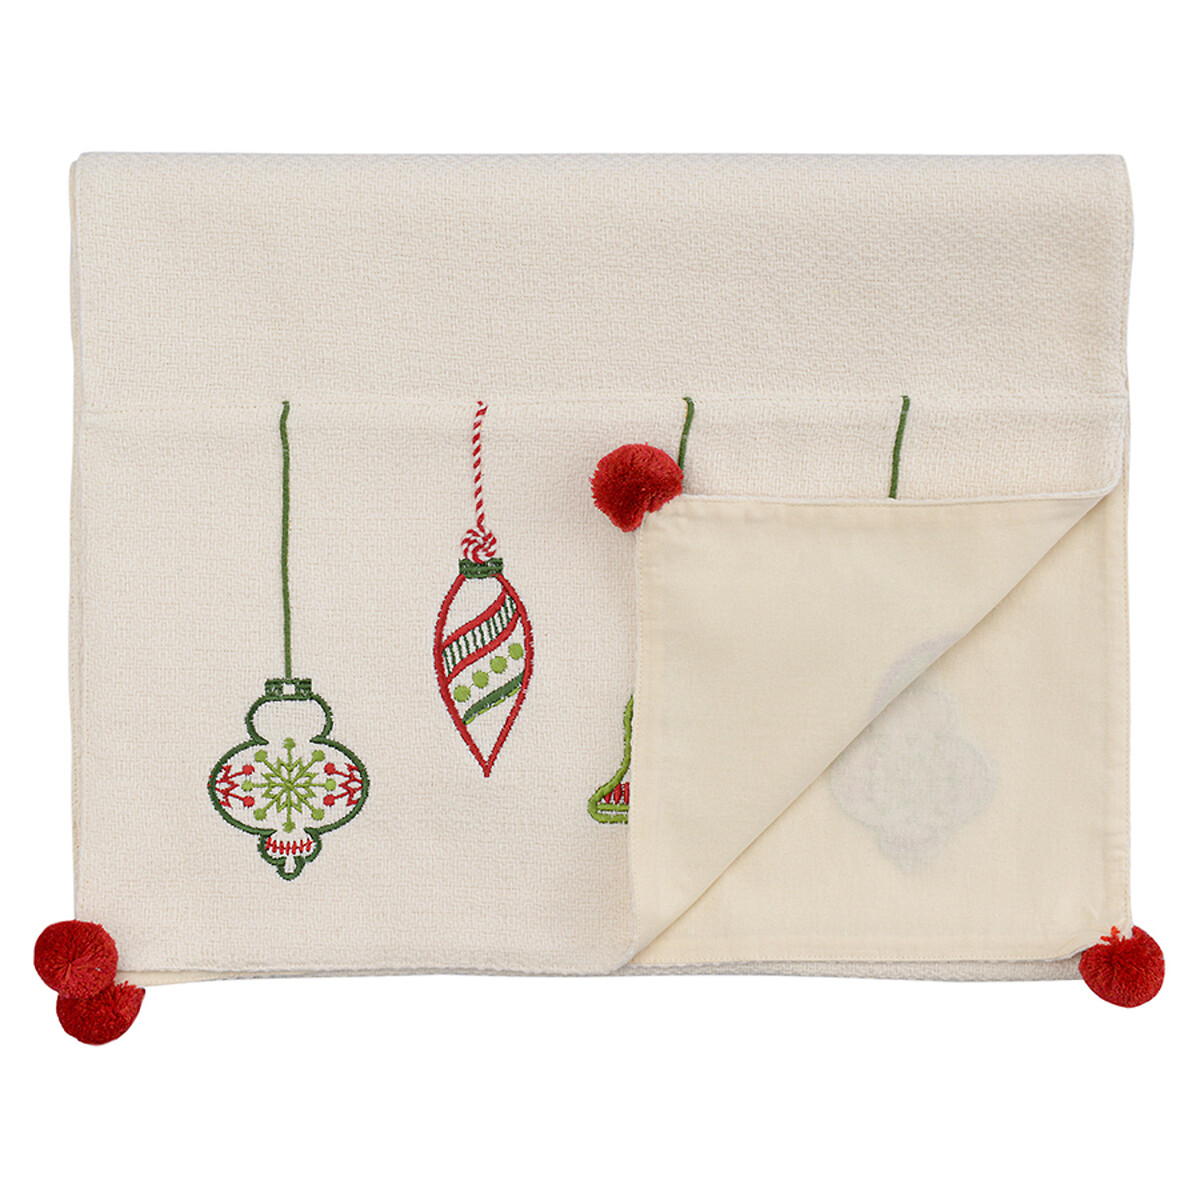 Дорожка с вышивкой Christmas decorations из коллекции New Year Essential 45х150 см единый размер белый